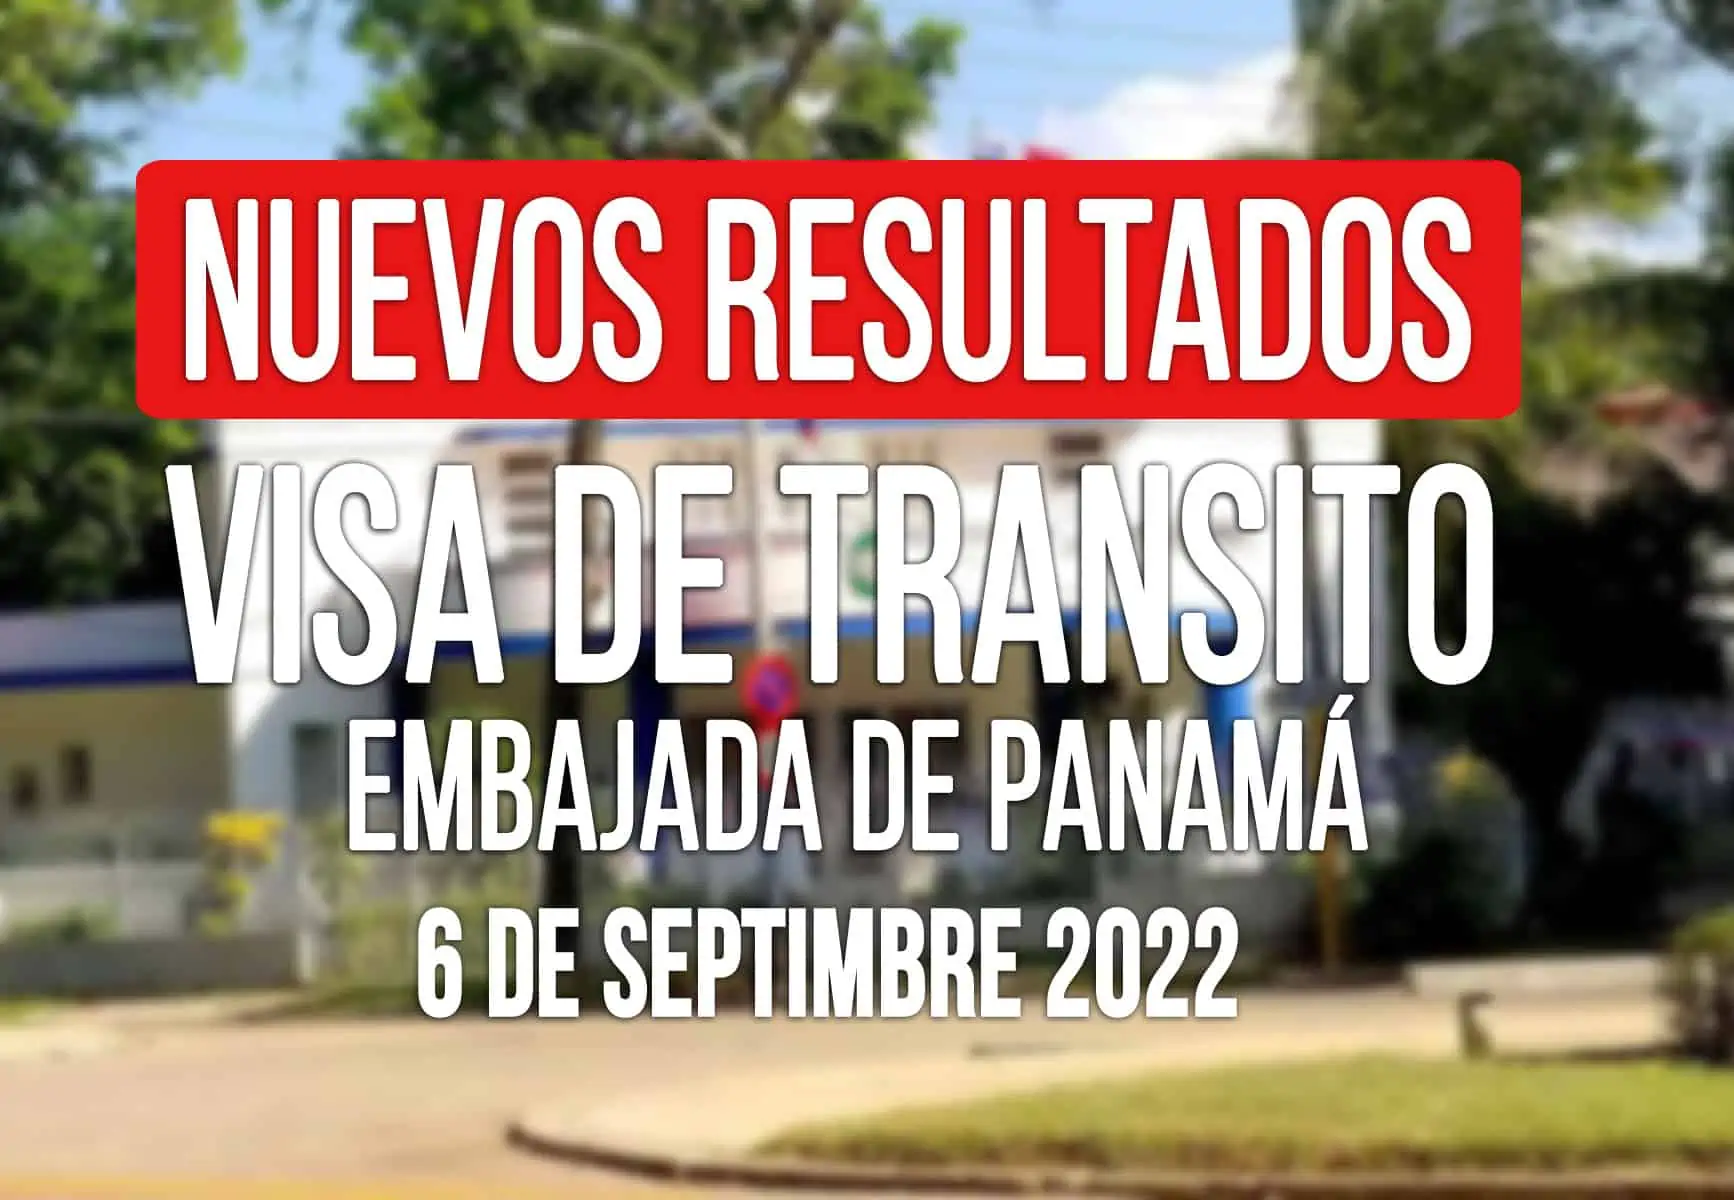 Embajada de Panamá Anuncia Resultados de Visas de Tránsito